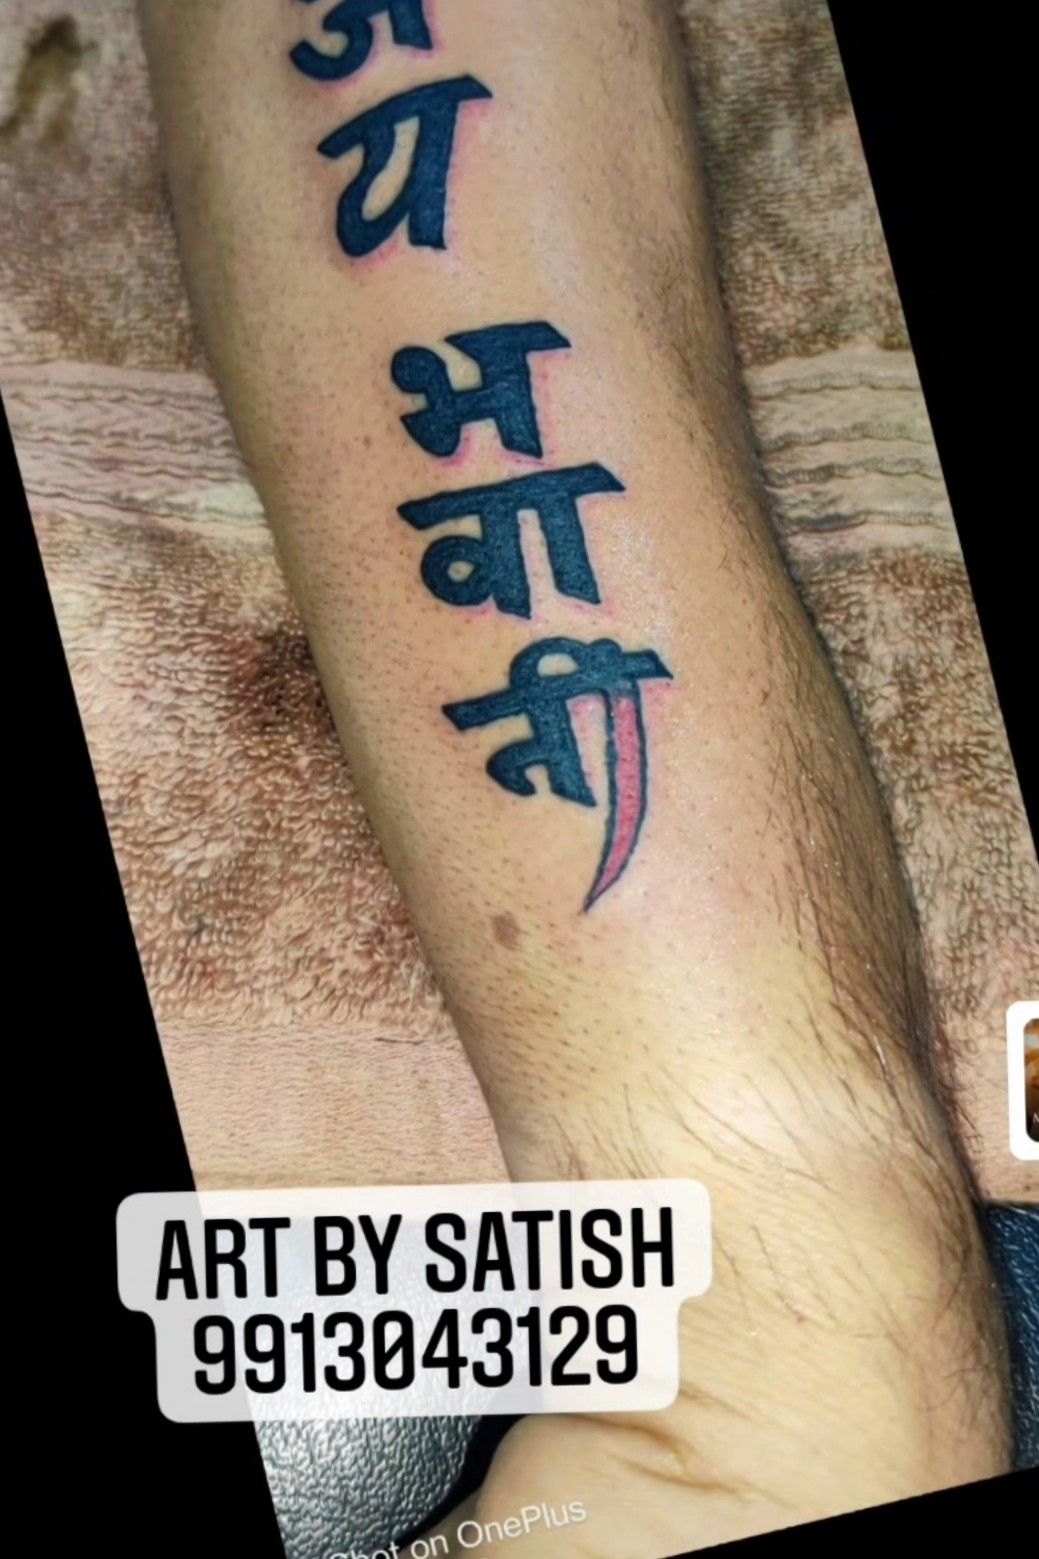 Chehar ma tattoo |mataji tattoo |samurai tattoo mehsana | Ma tattoo,  Infinity tattoo designs, Tattoos